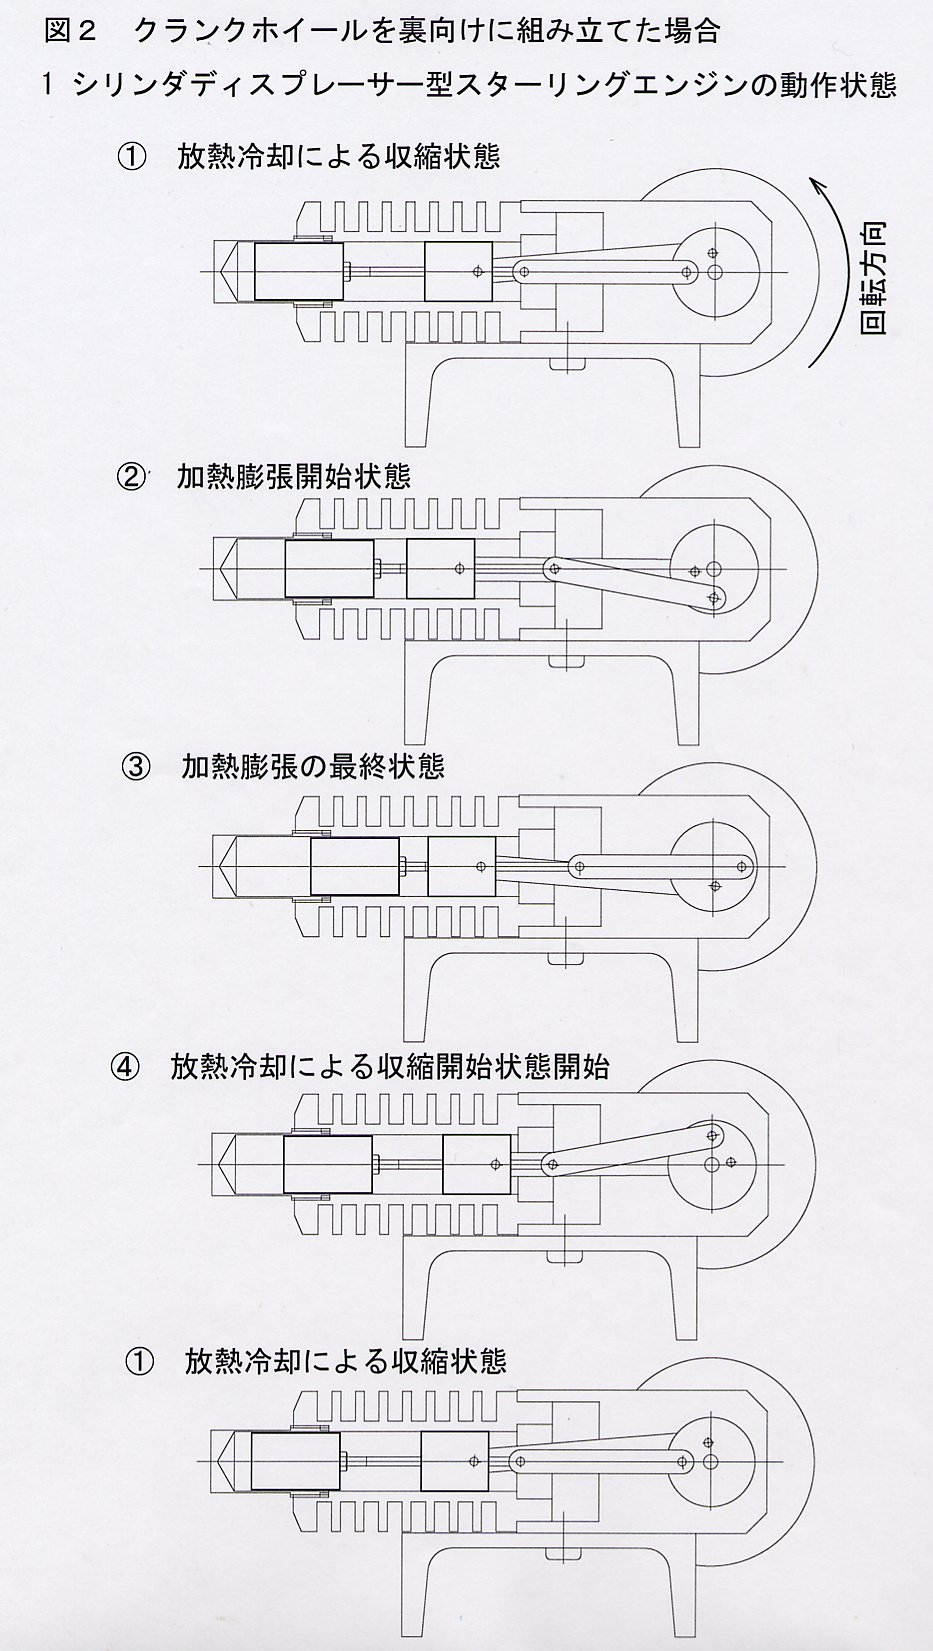 香川高等専門学校 機械工学科 スターリングエンジンの動作原理